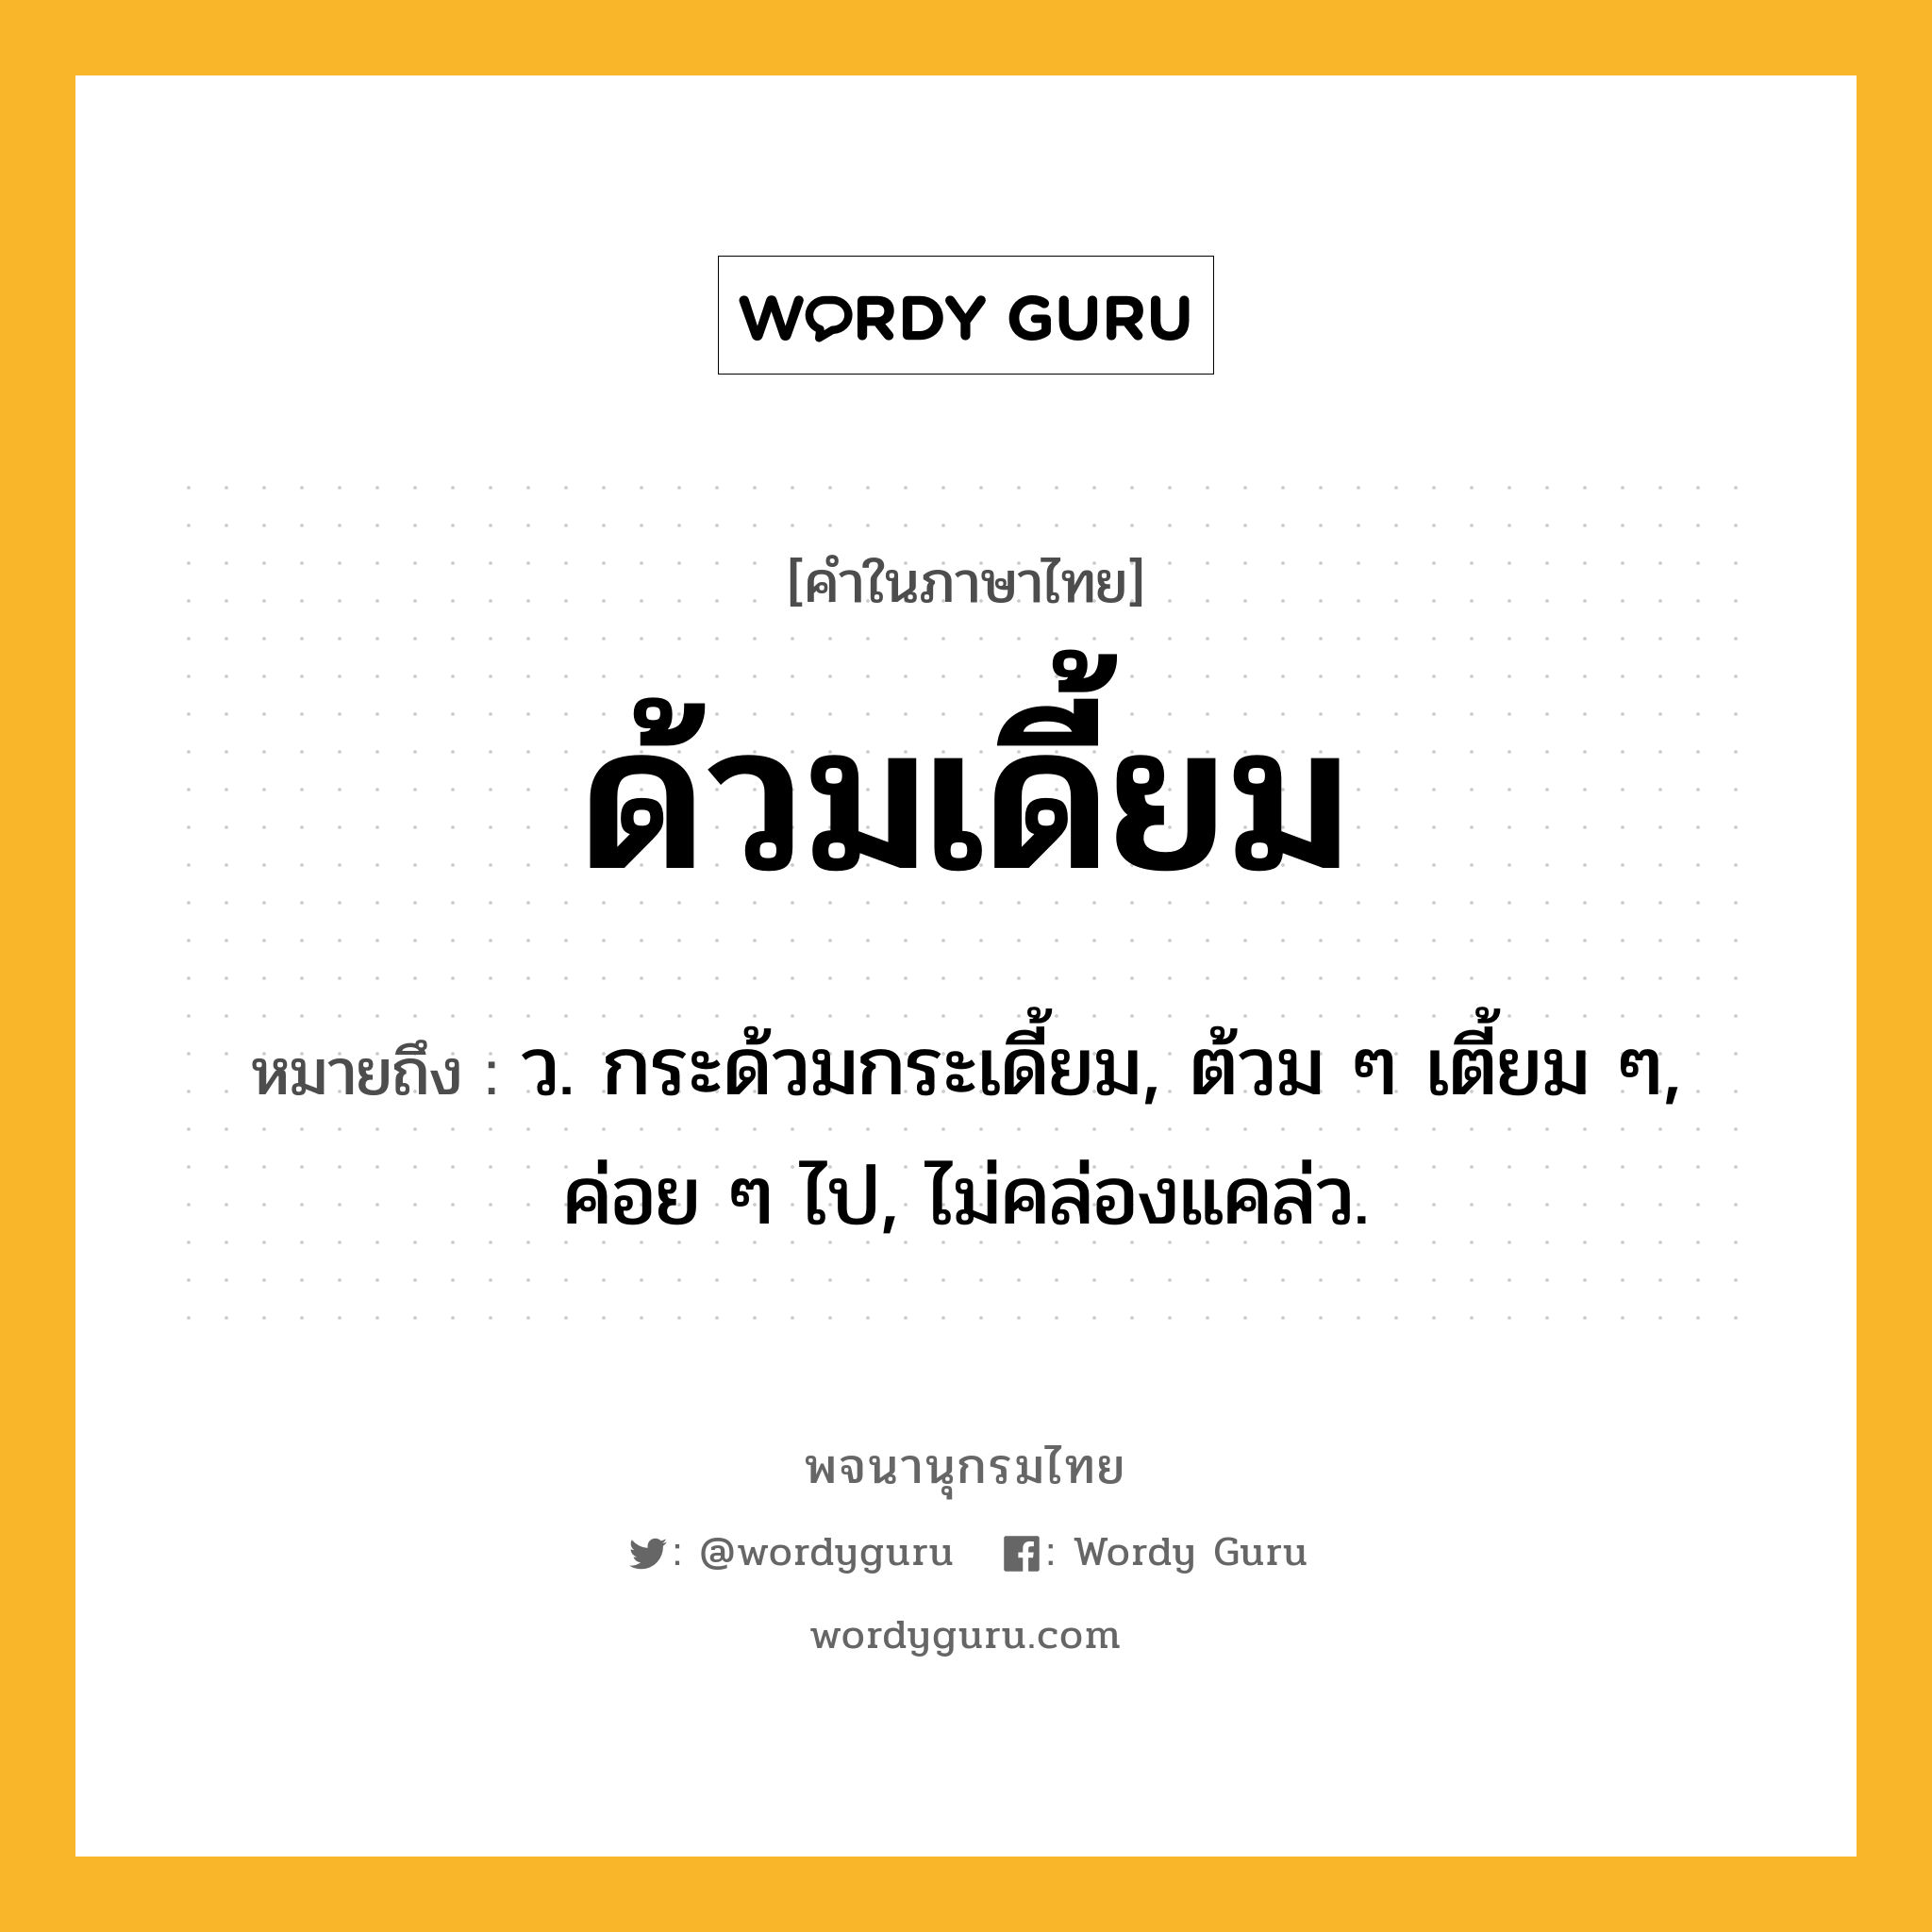 ด้วมเดี้ยม ความหมาย หมายถึงอะไร?, คำในภาษาไทย ด้วมเดี้ยม หมายถึง ว. กระด้วมกระเดี้ยม, ต้วม ๆ เตี้ยม ๆ, ค่อย ๆ ไป, ไม่คล่องแคล่ว.